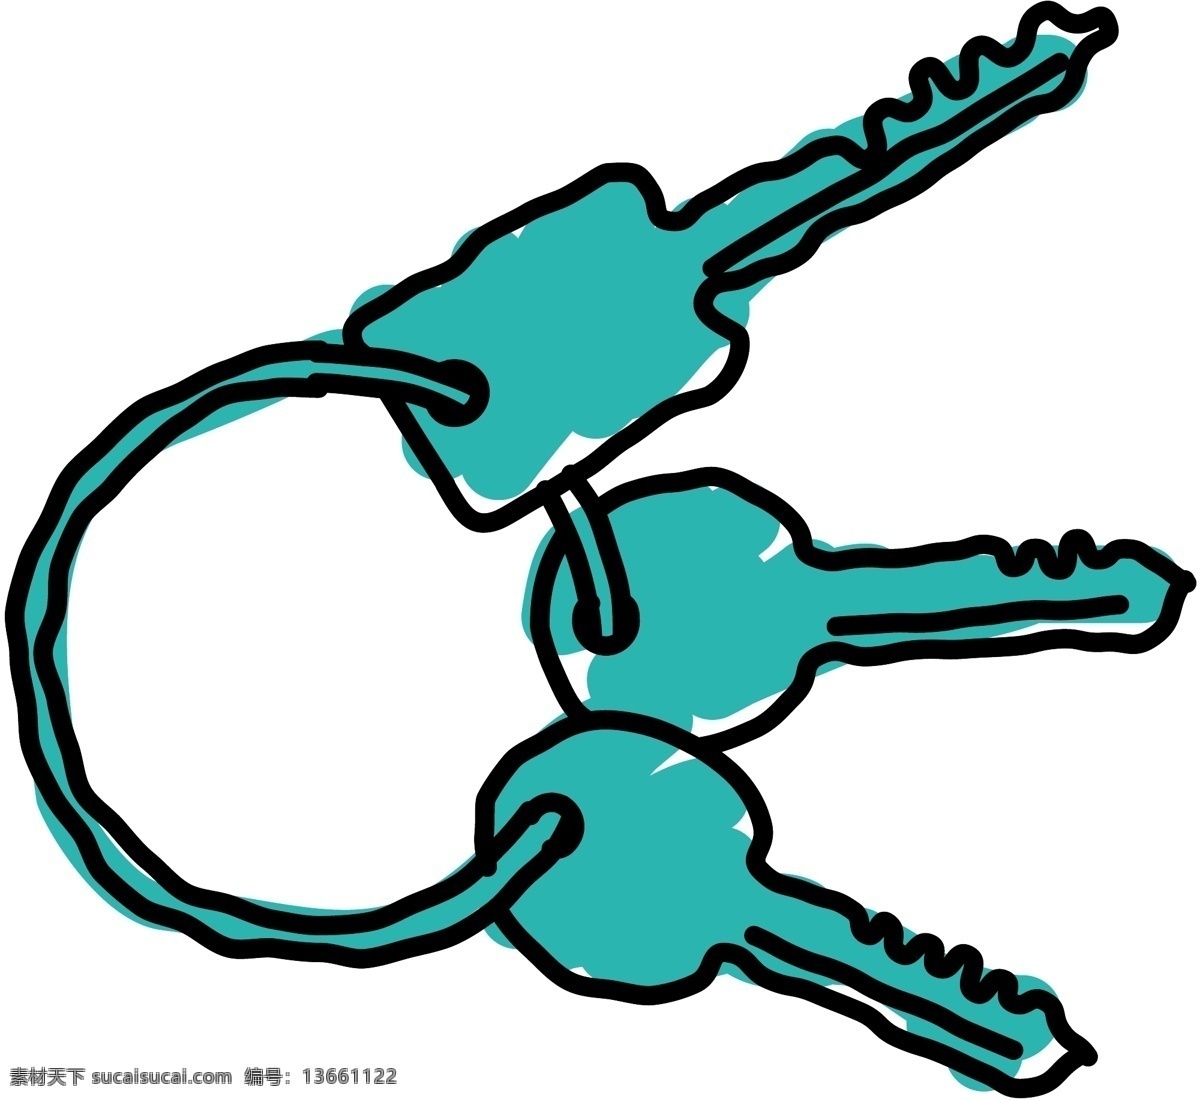 钥匙 锁 门锁 防盗锁 卡通锁 五用品 锁具 分层